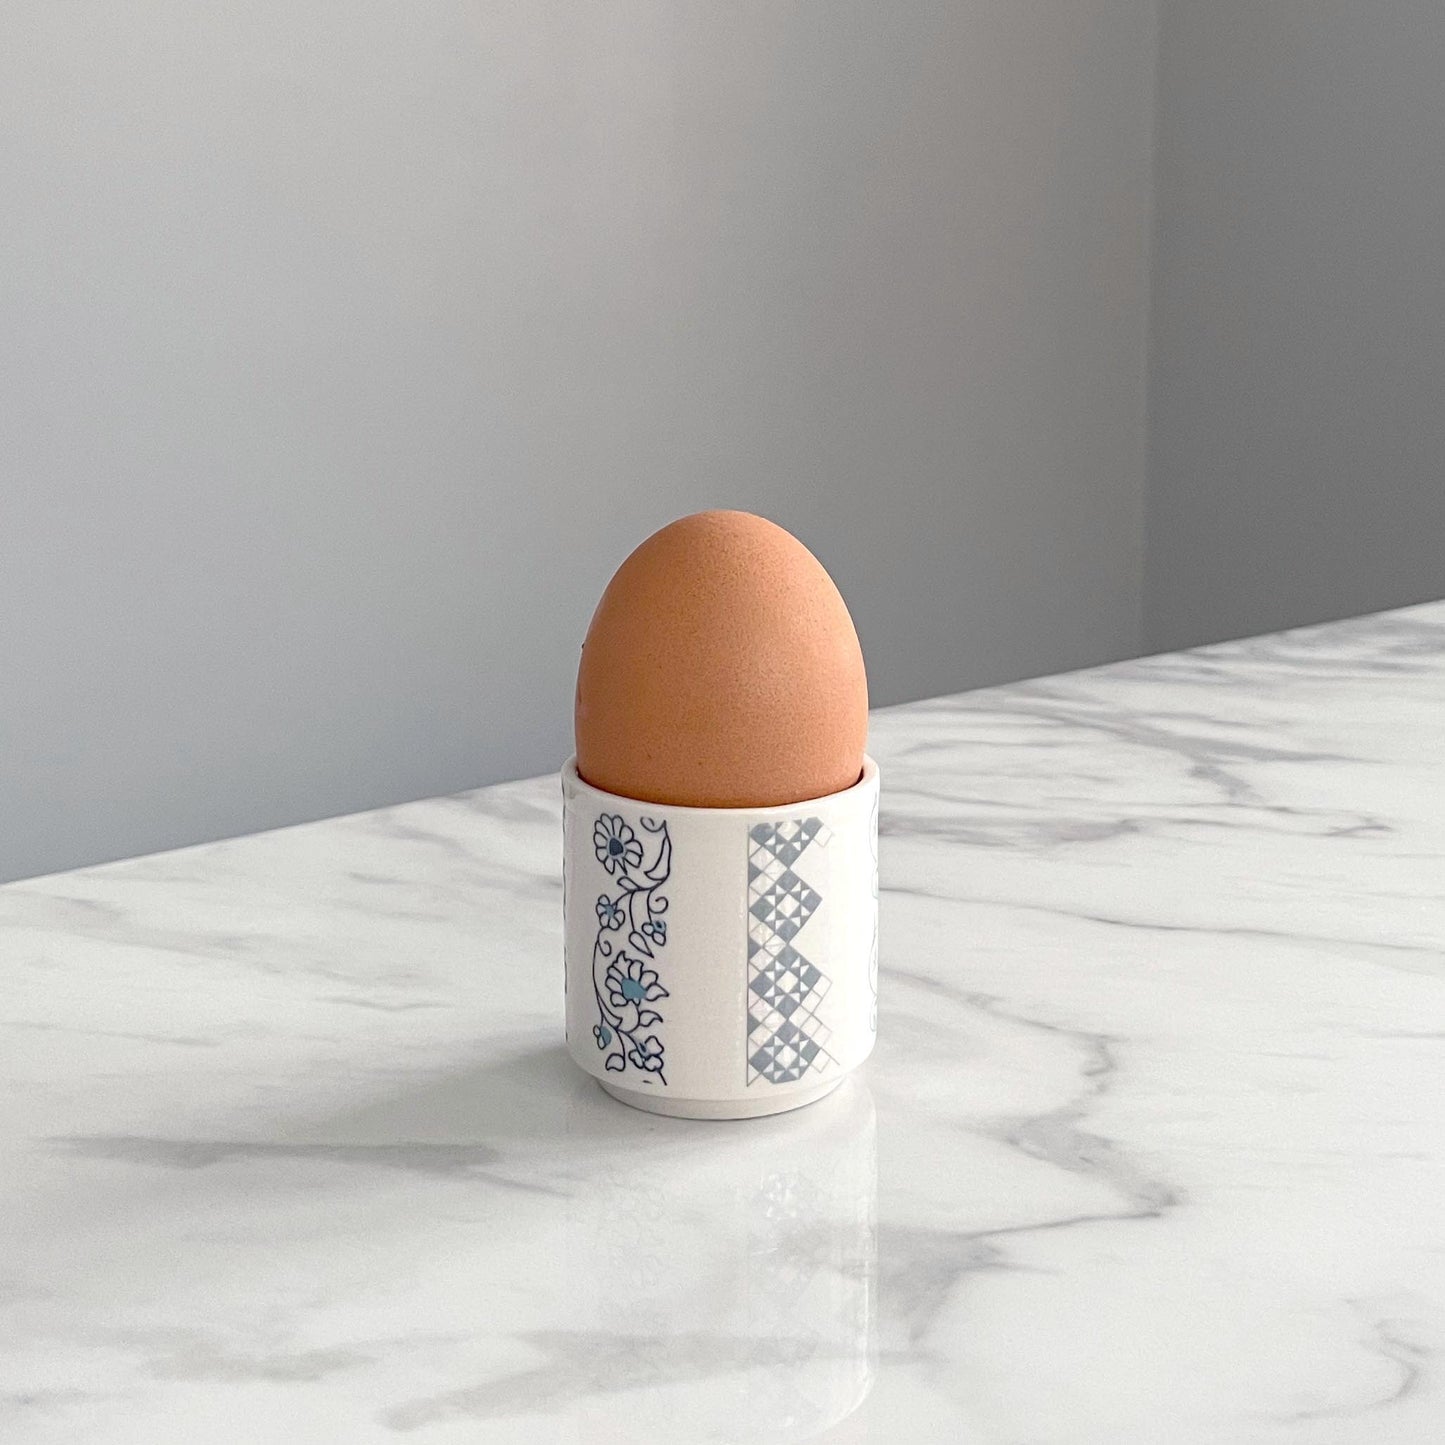 Porcelain Egg Cup - Jasmine Design